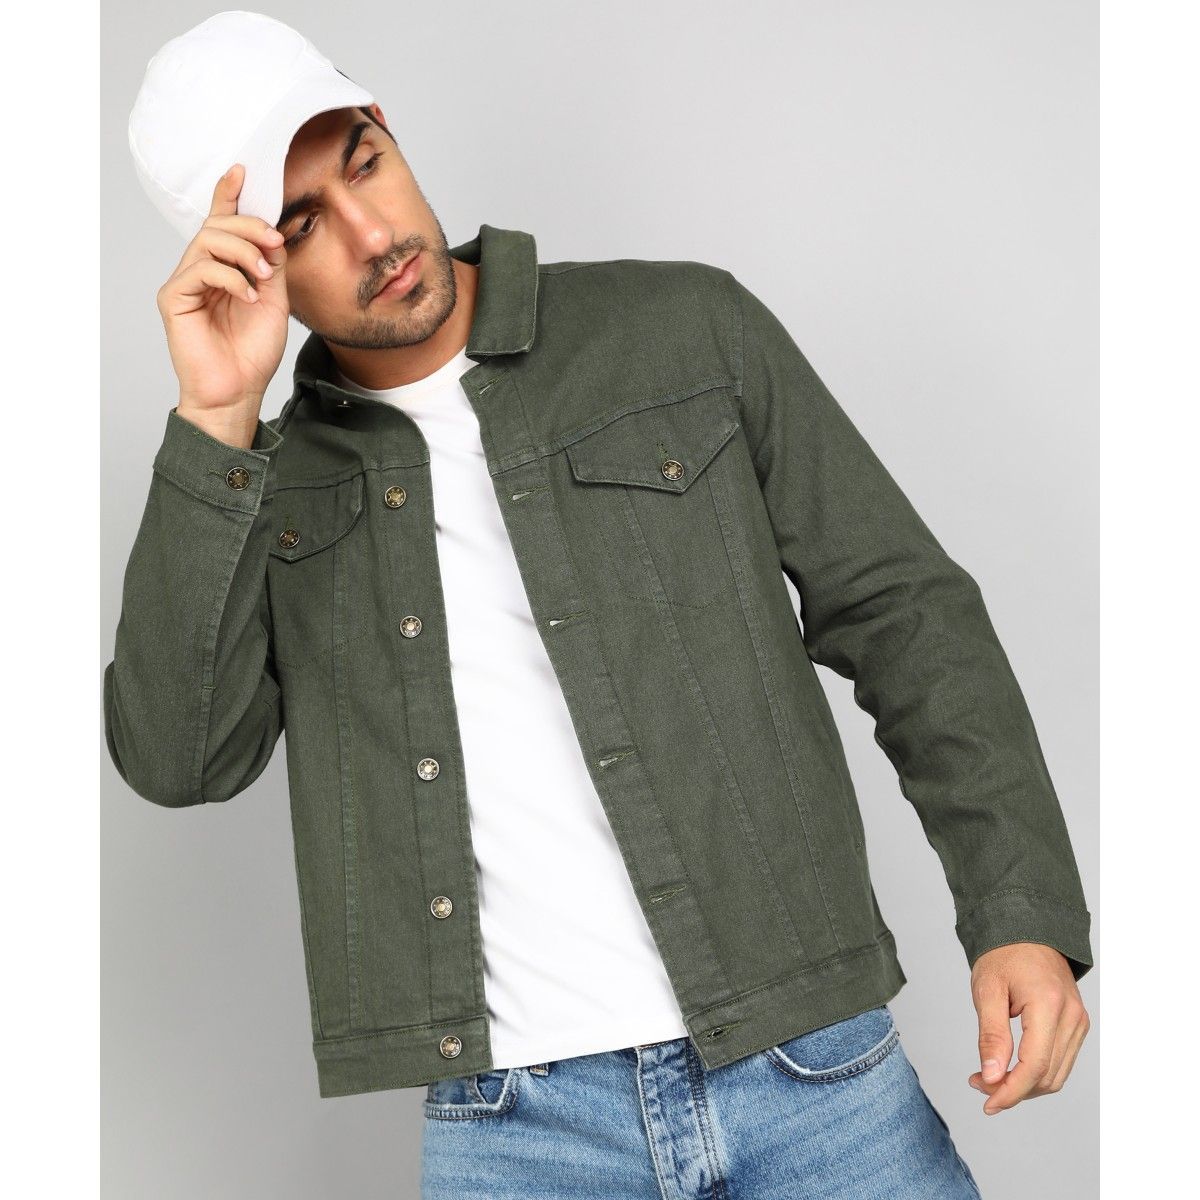 Buy OVS Men Olive Green Solid Denim Jacket - Jackets for Men 9349299 |  Myntra